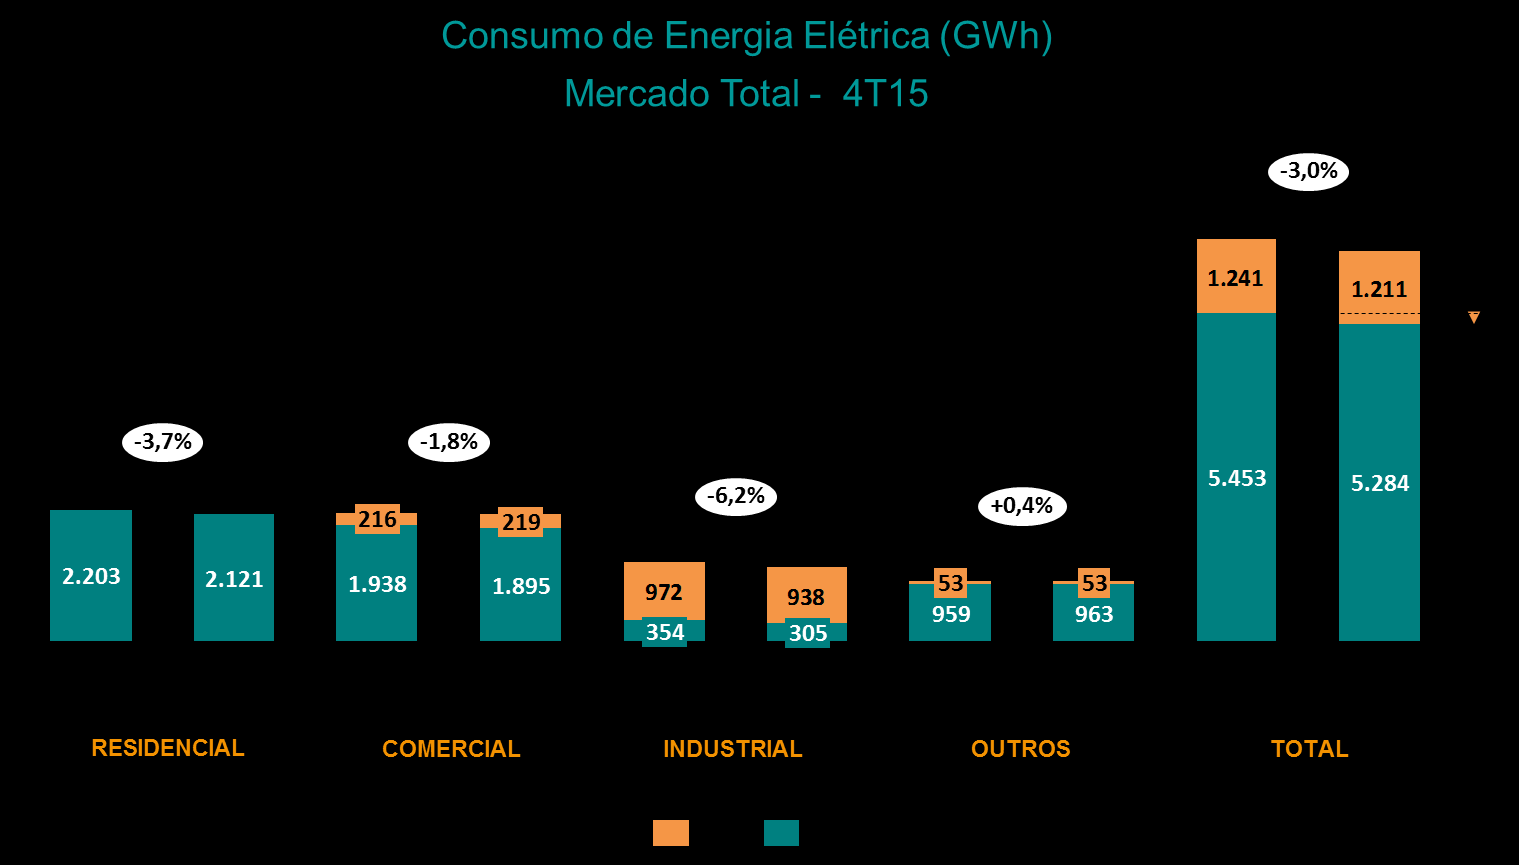 PRÉVIA OPERACIONAL Rio de Janeiro, 29 de janeiro de 2016 - A Light S.A. (BMF&BOVESPA: LIGT3) divulga informações prévias operacionais dos segmentos de distribuição, geração e comercialização/serviços de energia do quarto trimestre de 2015 (4T15).